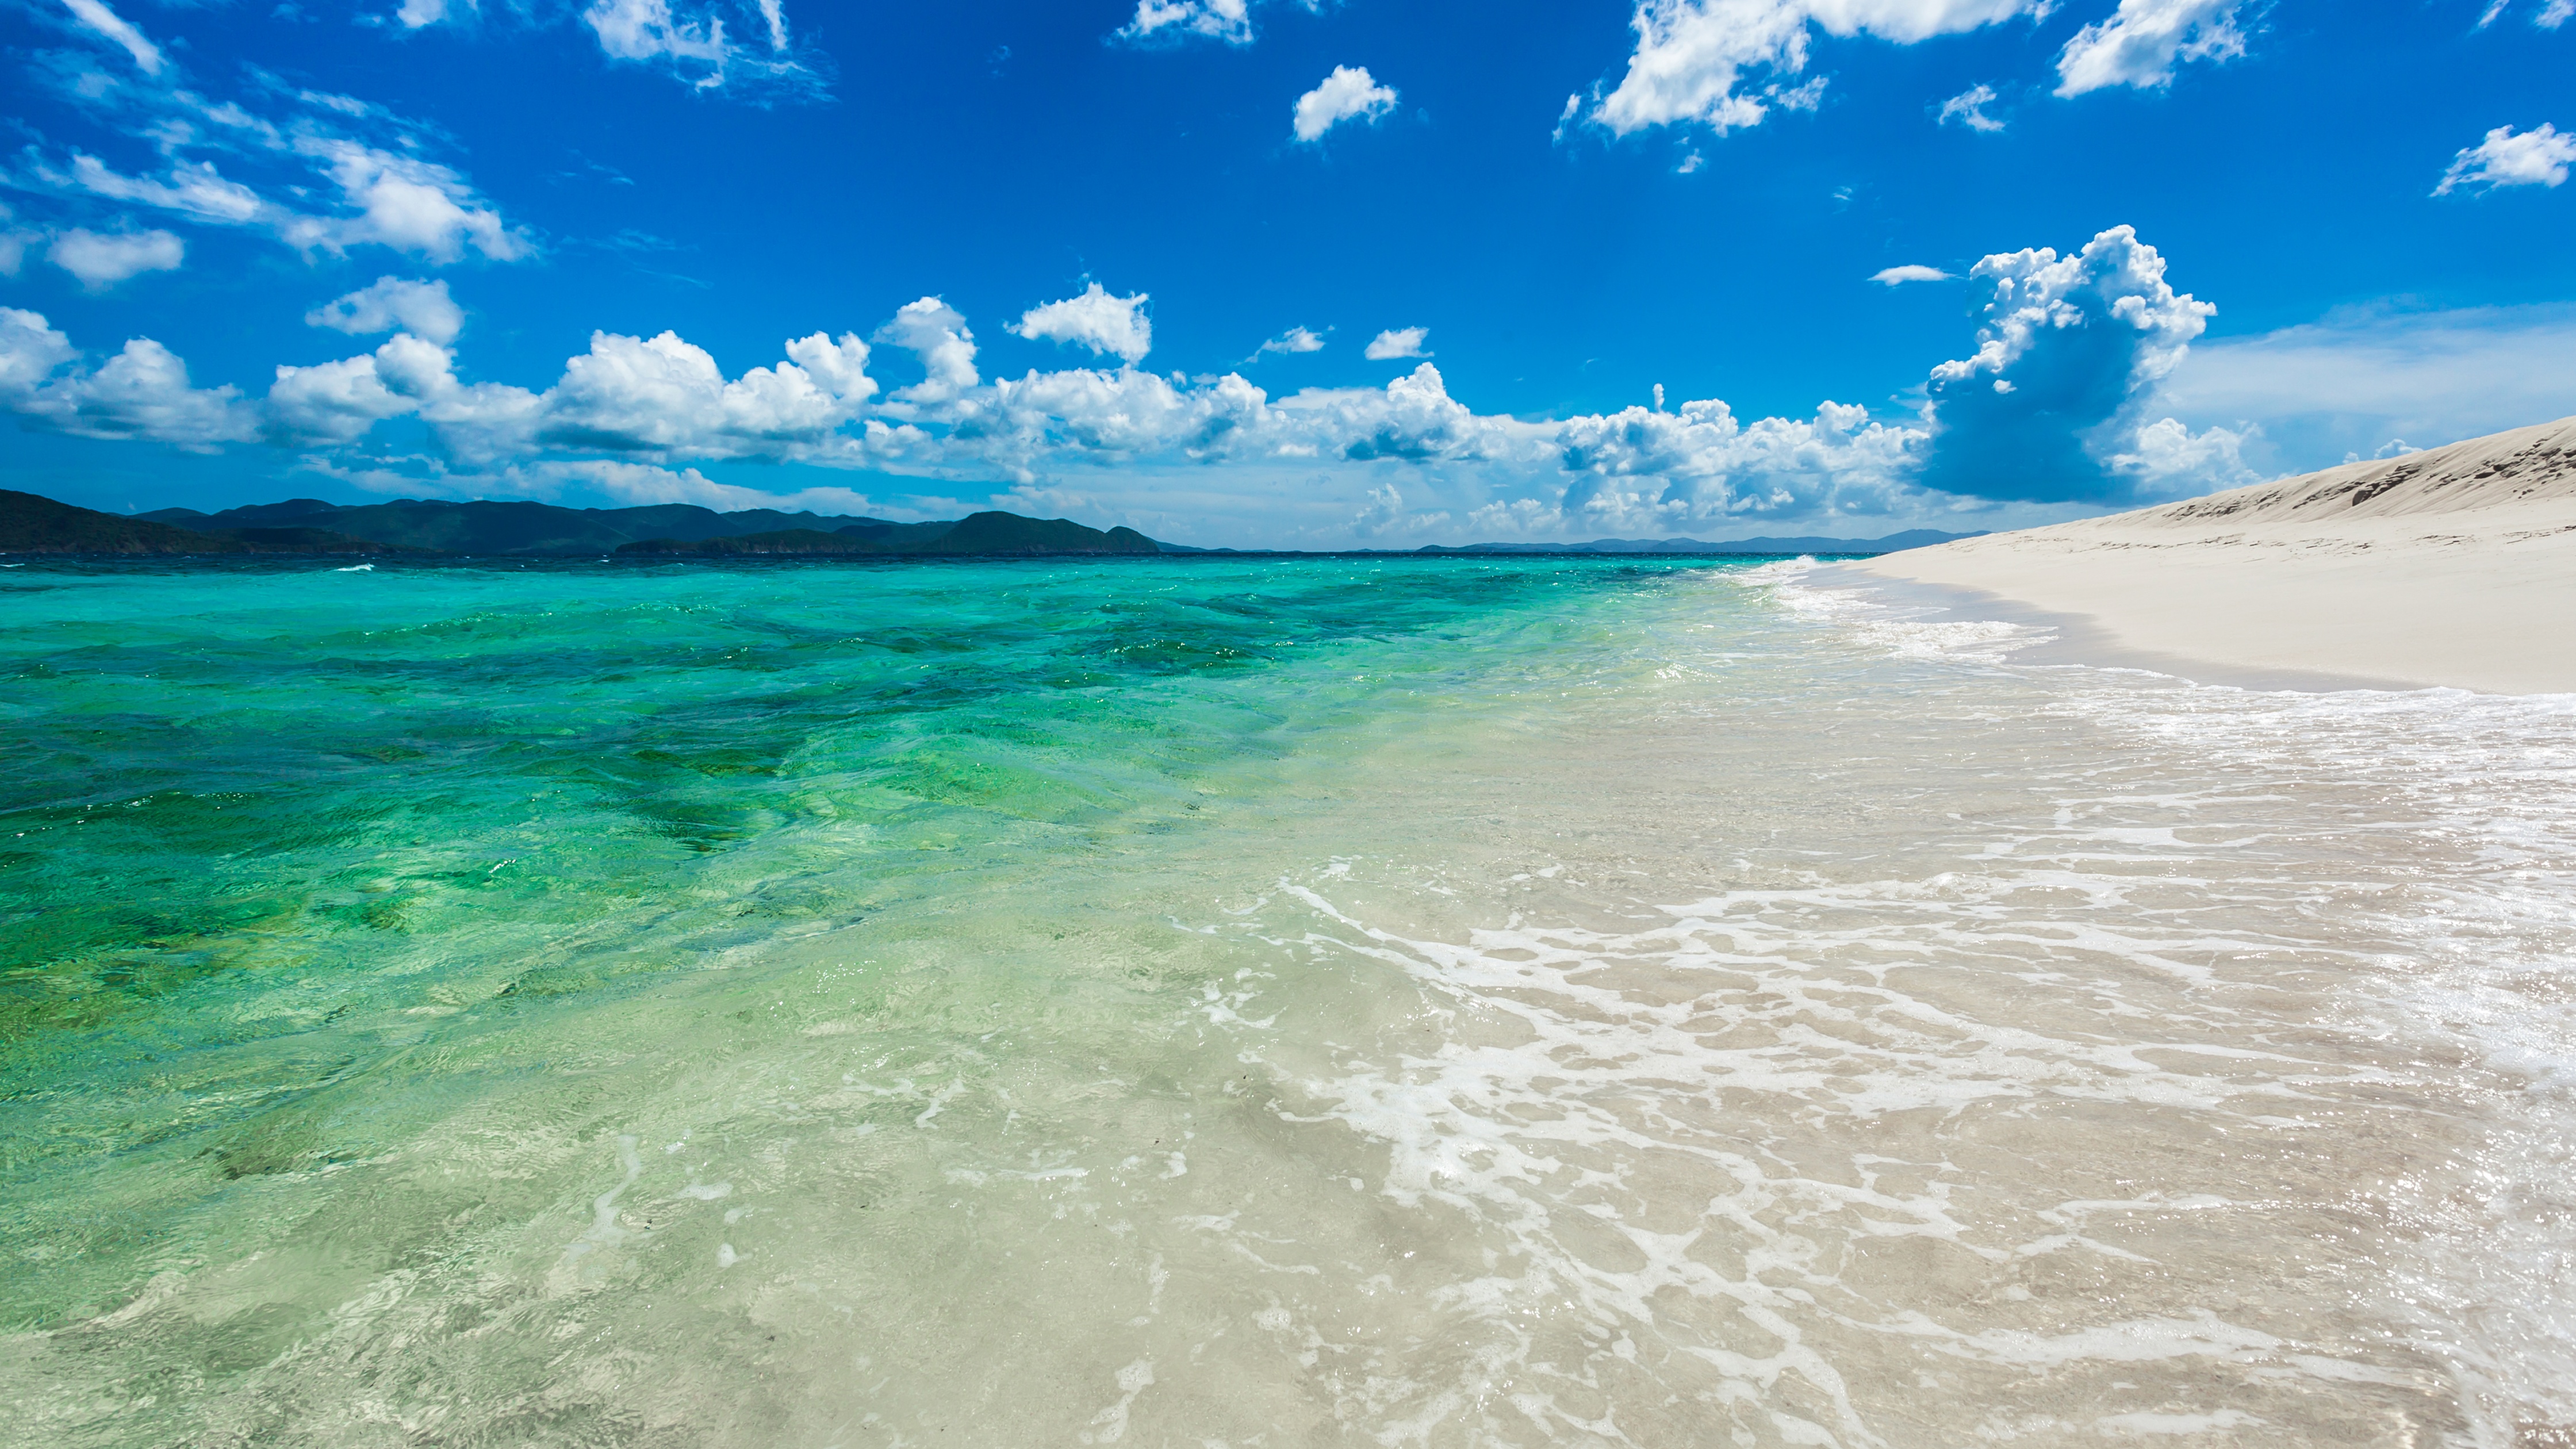 Nếu bạn là một người yêu thích du lịch và muốn tìm kiếm hình nền nổi bật cho máy tính của mình, thì hãy xem qua bức ảnh Sandy Cay Island. Với độ sắc nét cực cao, bức ảnh này sẽ mang đến cho bạn cảm giác như đang đứng trên bãi cát trắng và ngắm nhìn vẻ đẹp của đại dương.